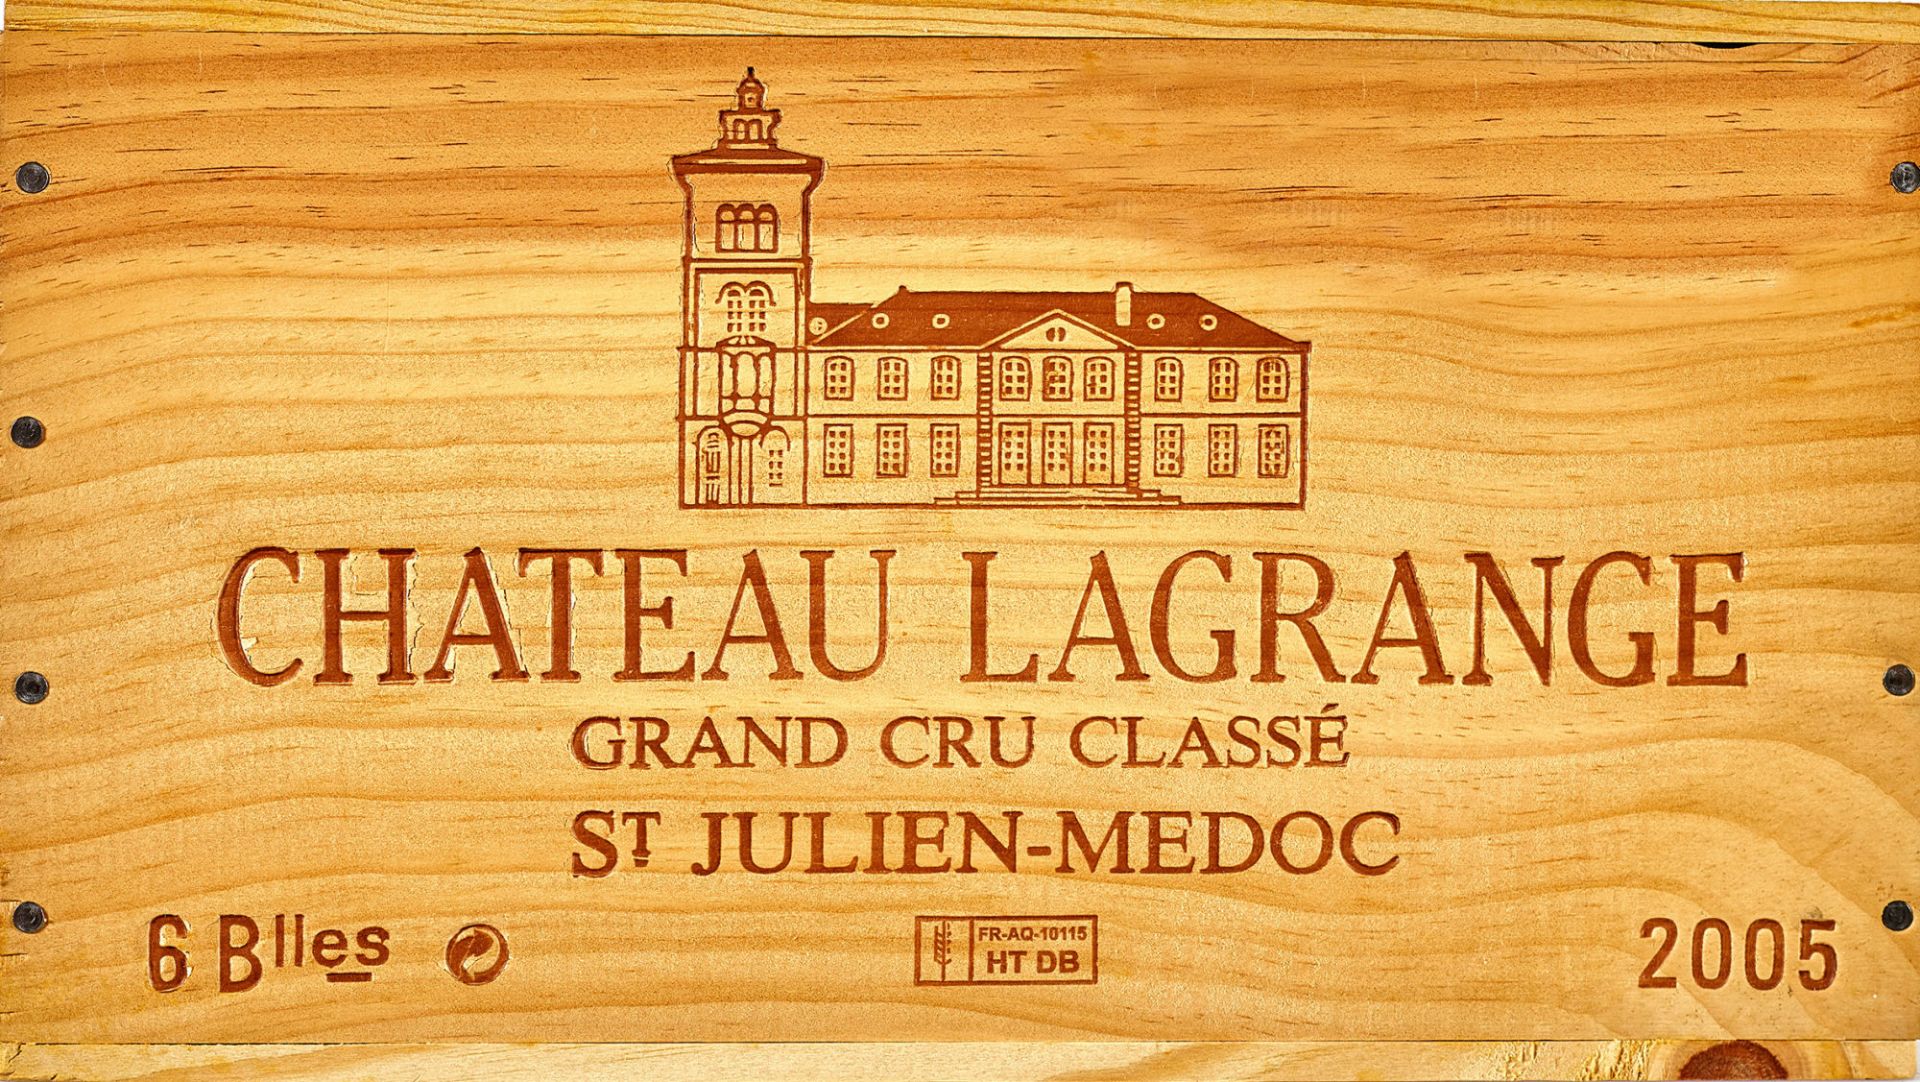 CHÂTEAU LAGRANGE: Saint-Julien-Médoc, Troisième Grand Cru Classé, 2005.